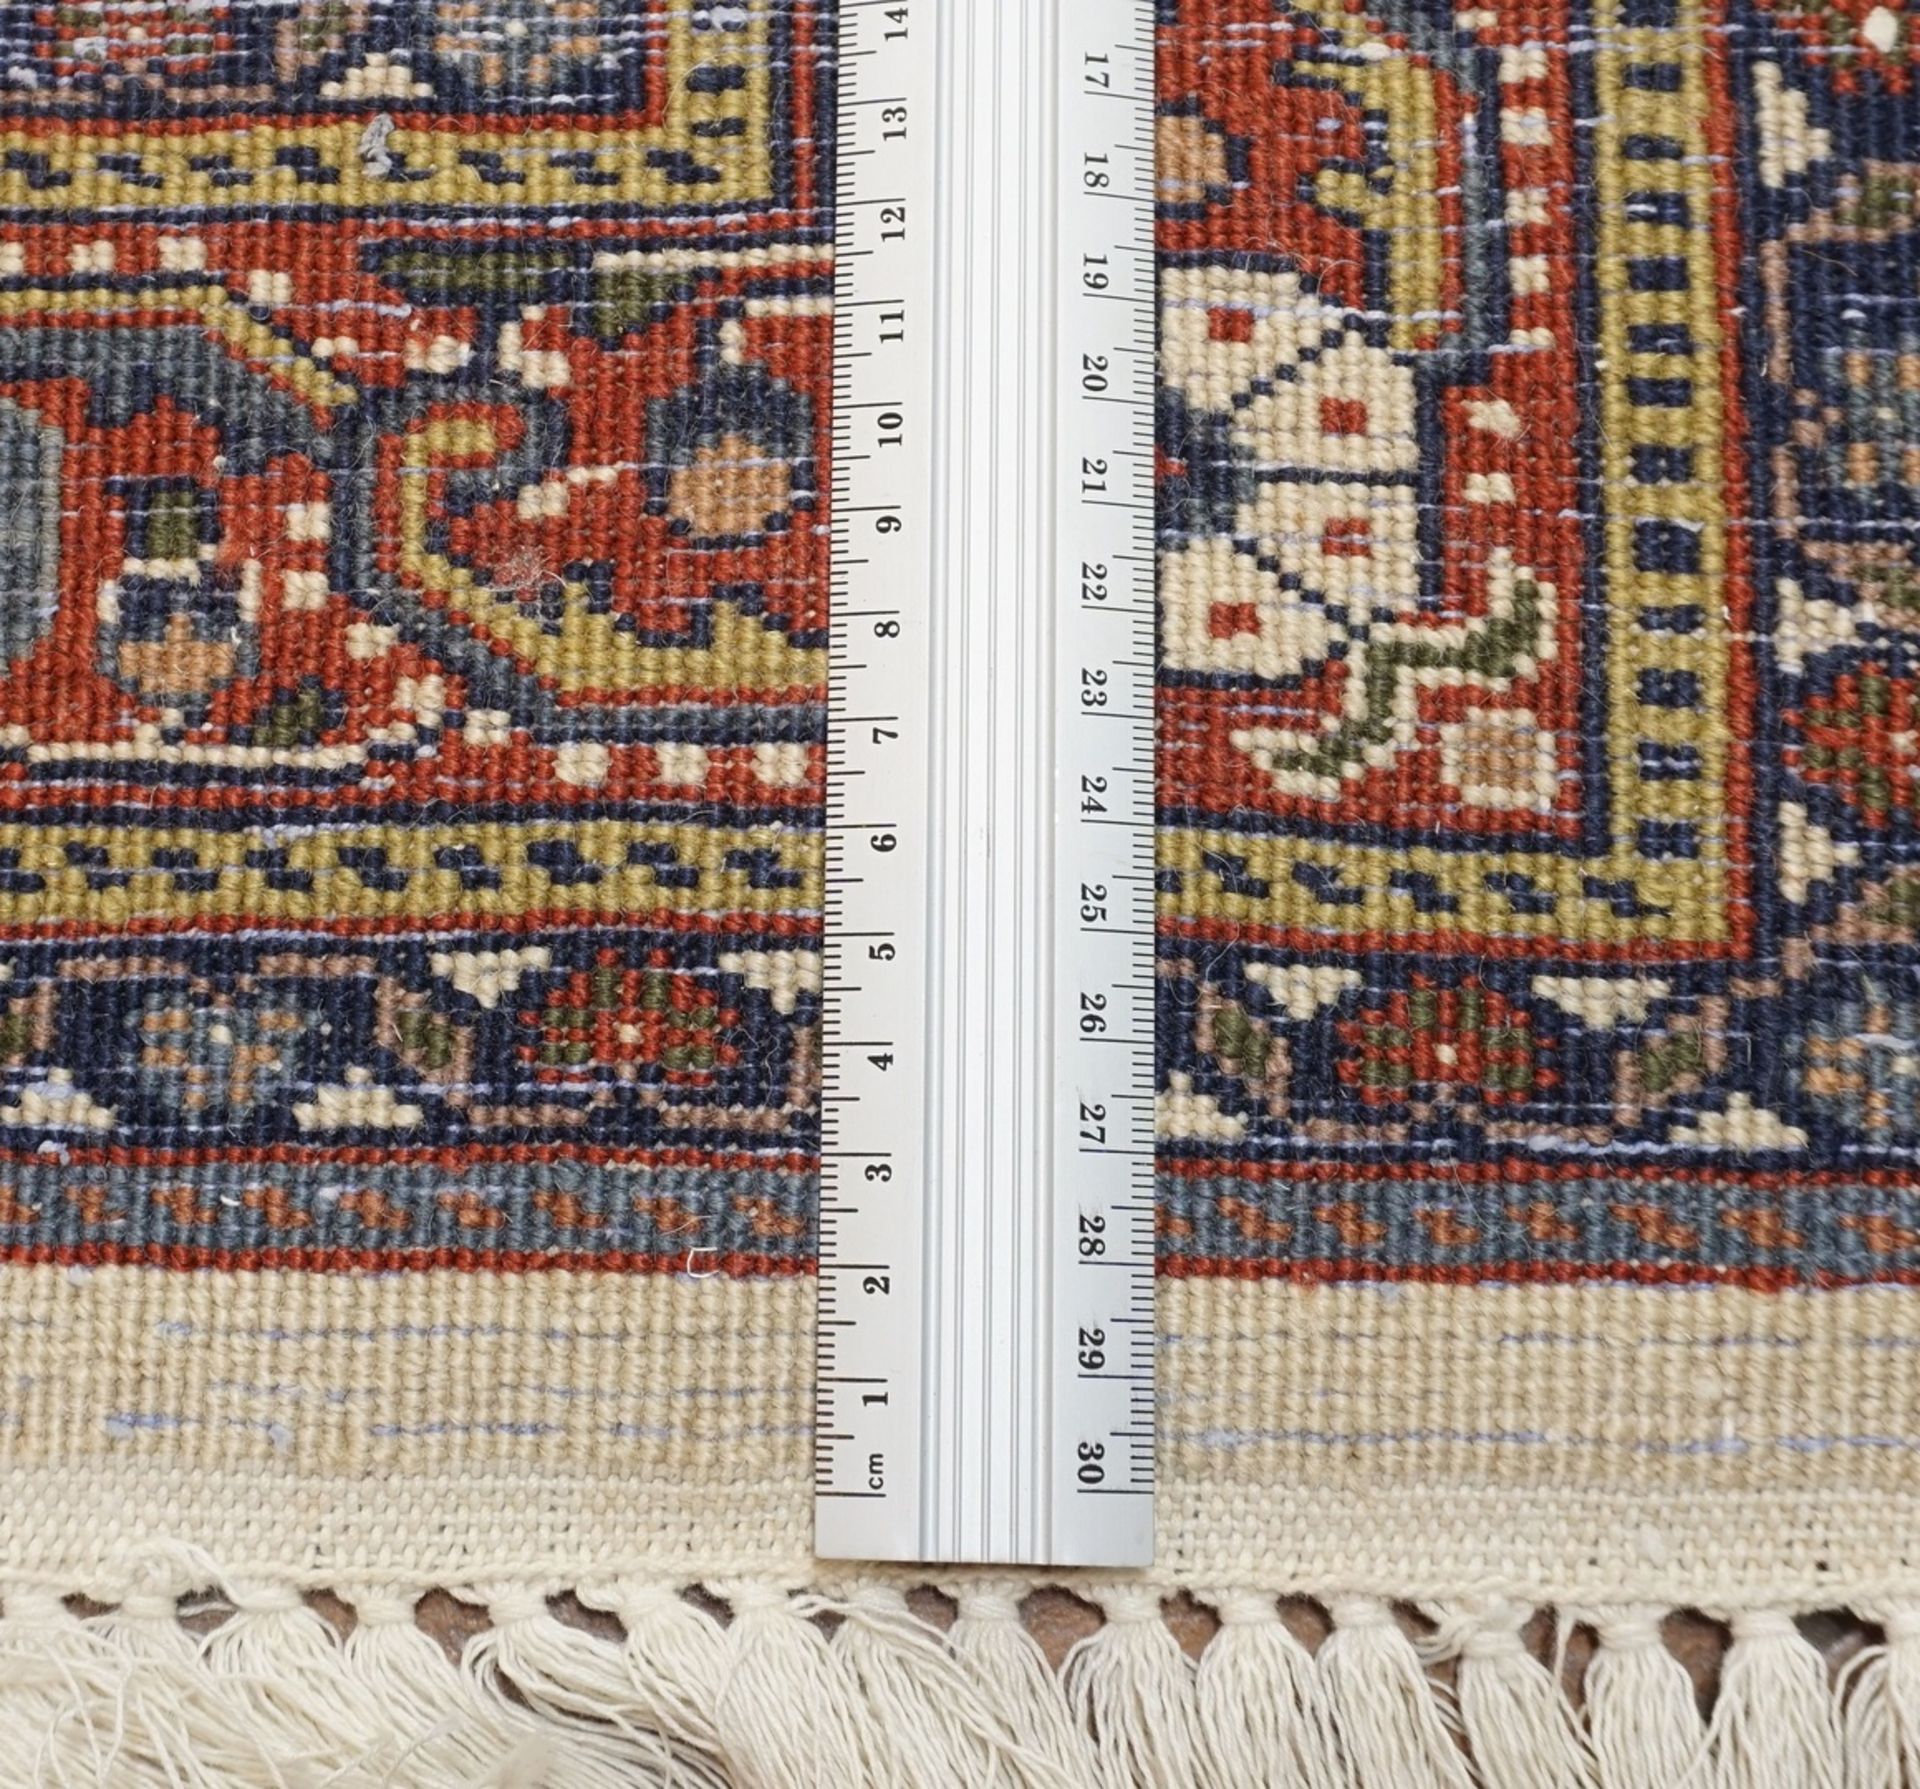 Indo KeschanWolle auf Baumwolle, feine Knüpfung, 2. Hälfte 20. Jh., schöner, hellgrundiger Teppich - Image 2 of 3